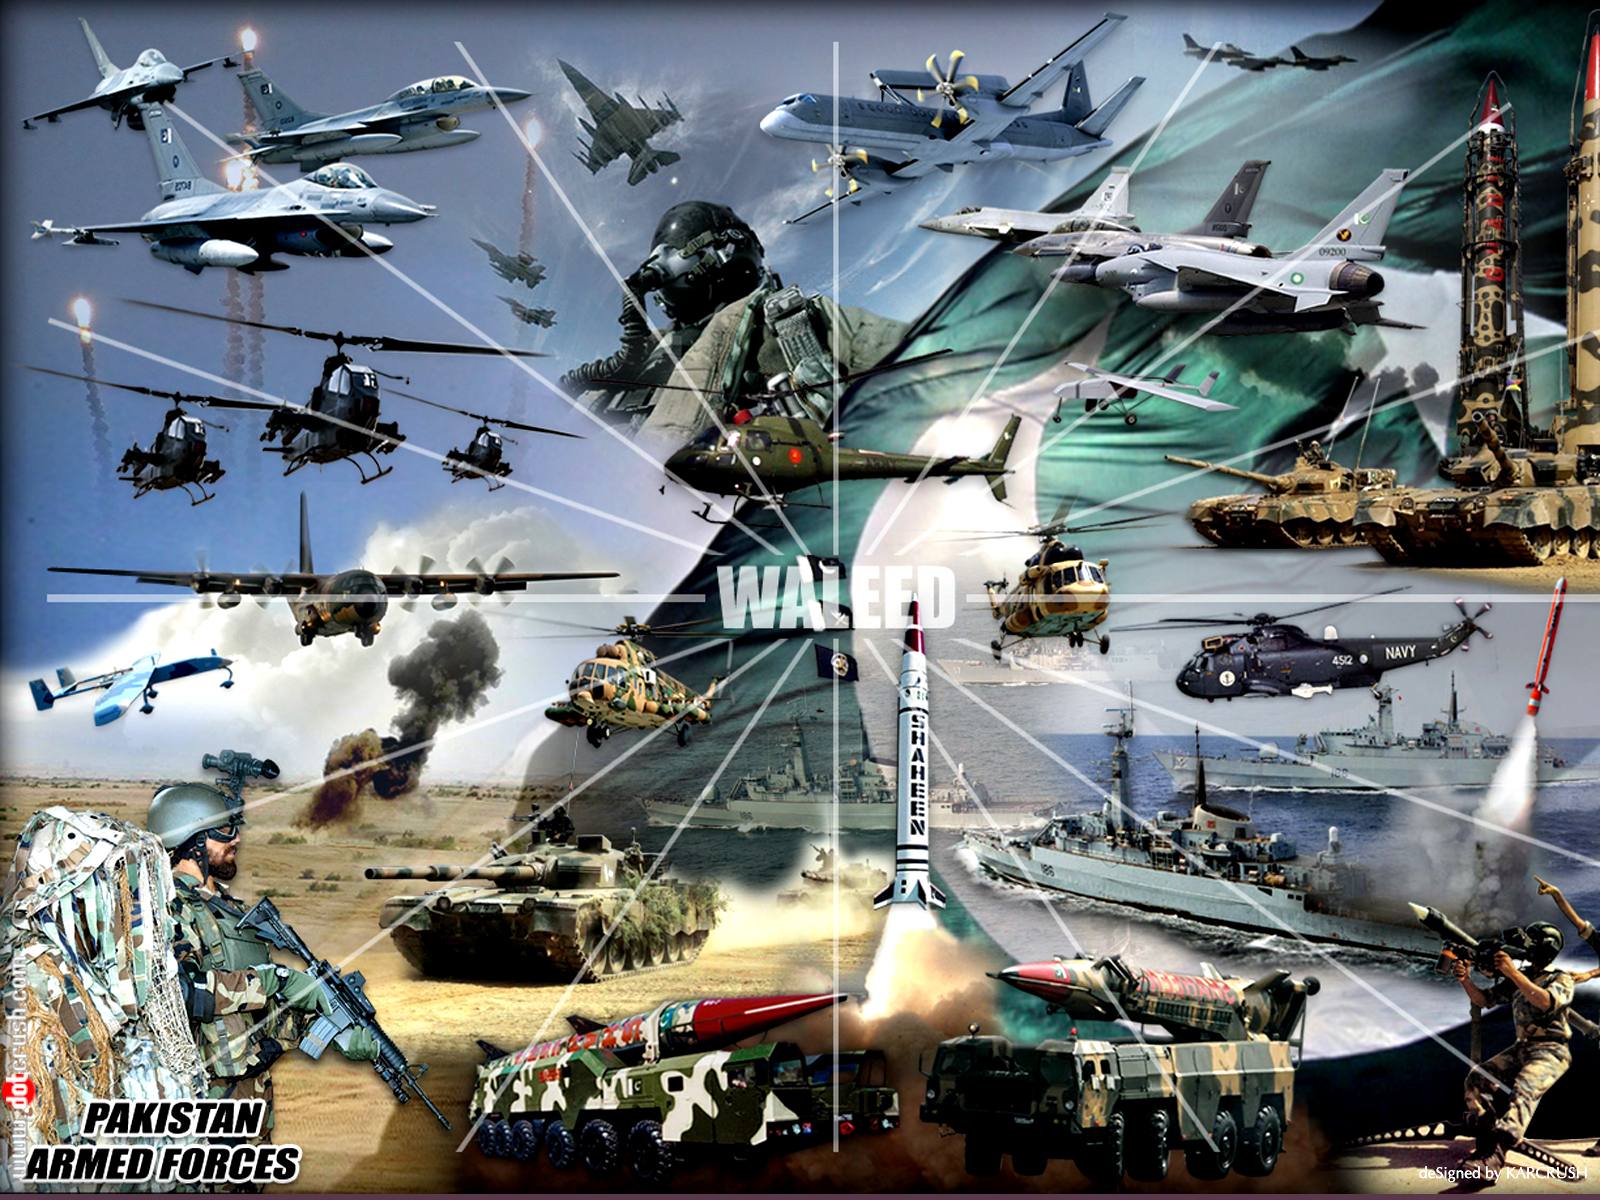 50+] Pak Army HD Wallpapers - WallpaperSafari